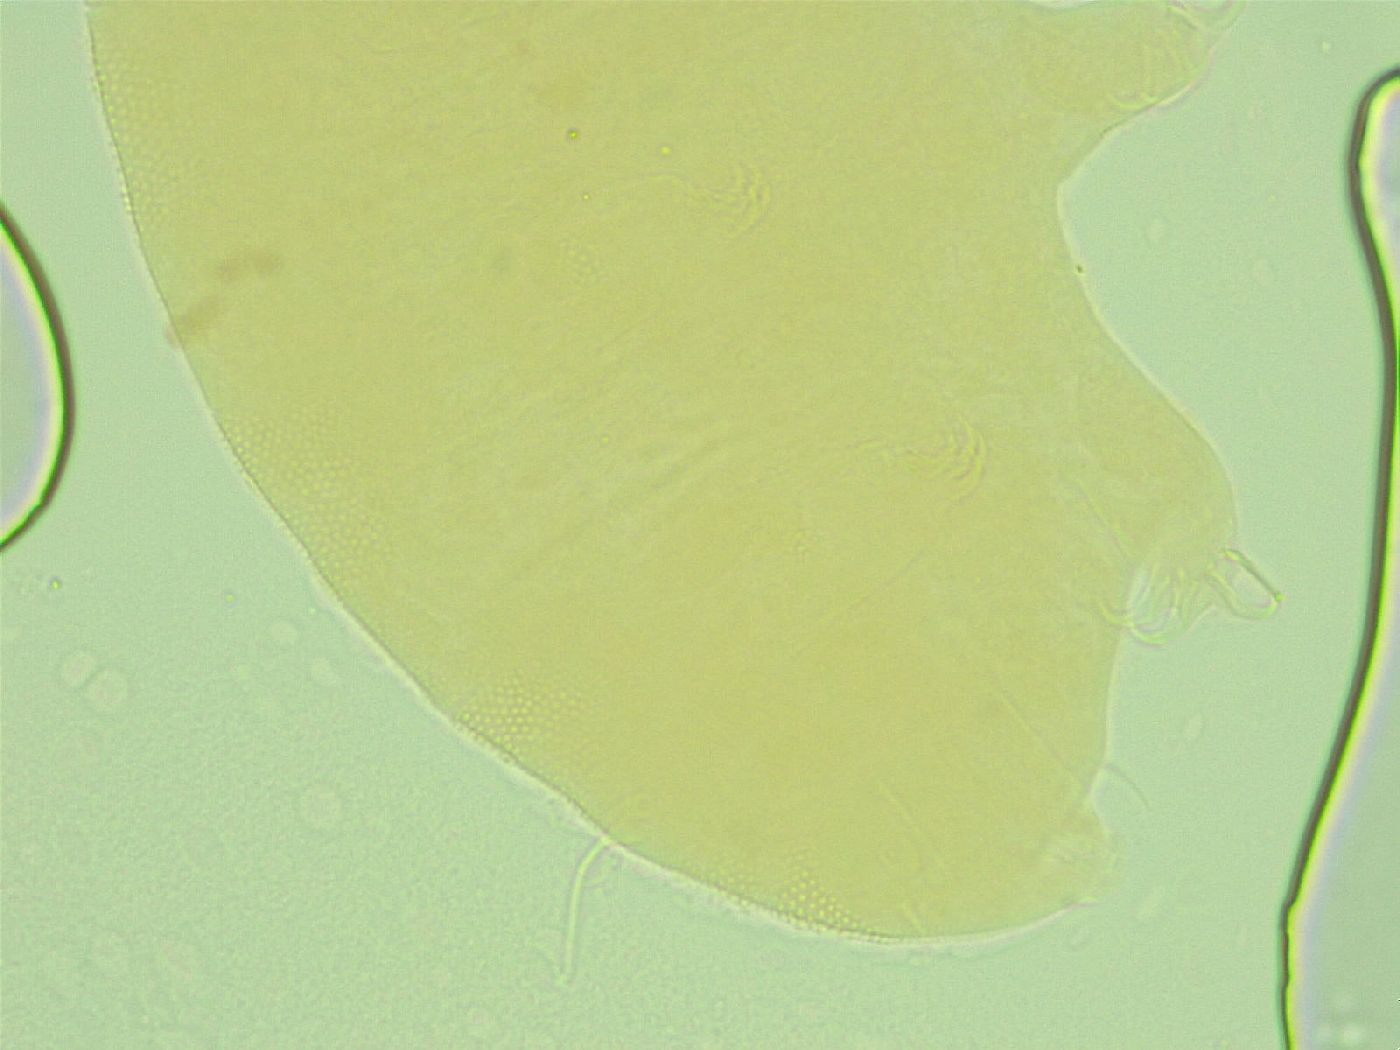 Pseudechiniscus novaezeelandiae image